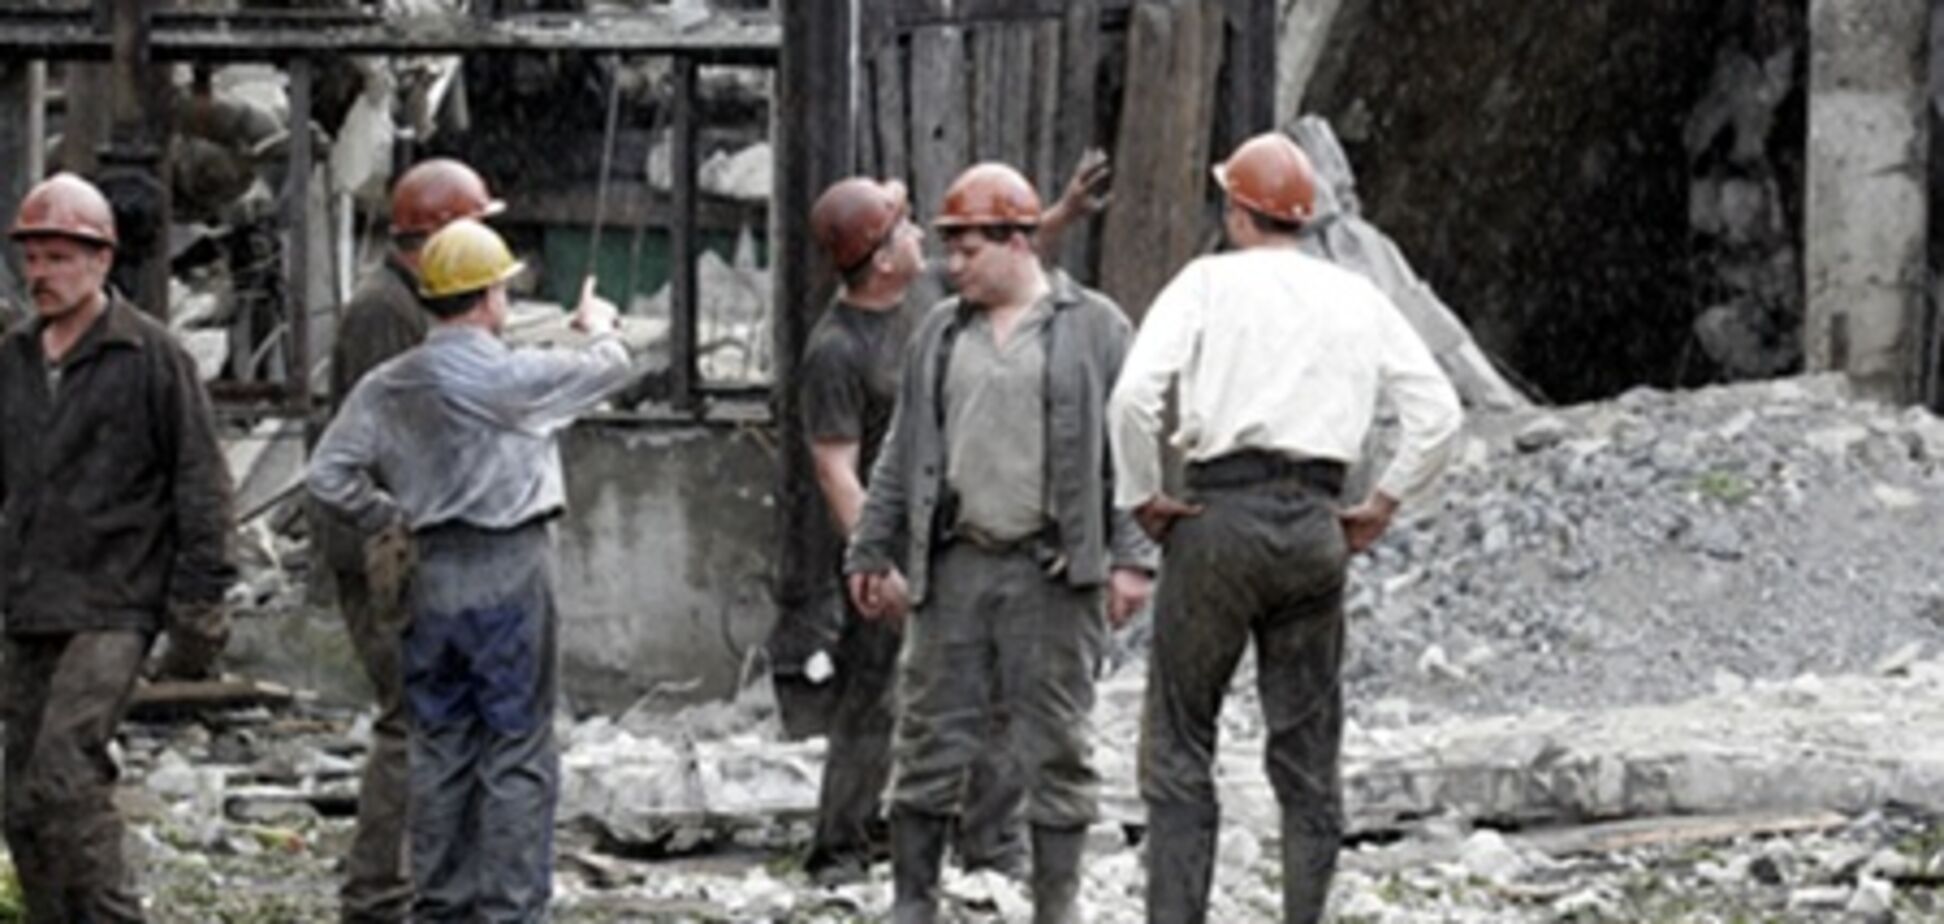 Вспышка метана на шахте: 5 горняков получили ожоги